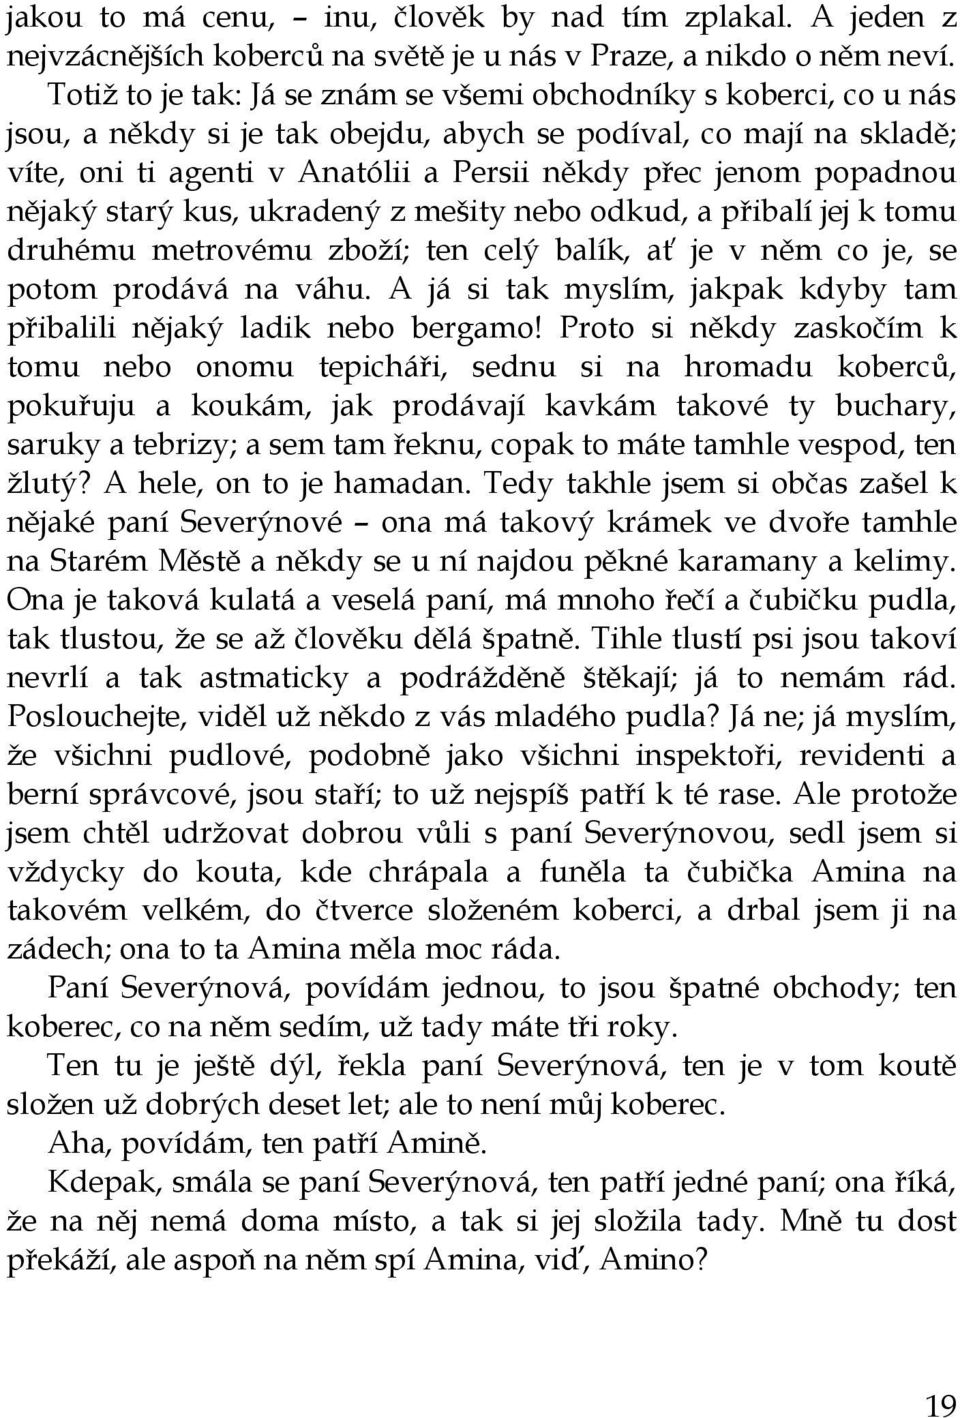 Karel Čapek POVÍDKY Z DRUHÉ KAPSY - PDF Free Download